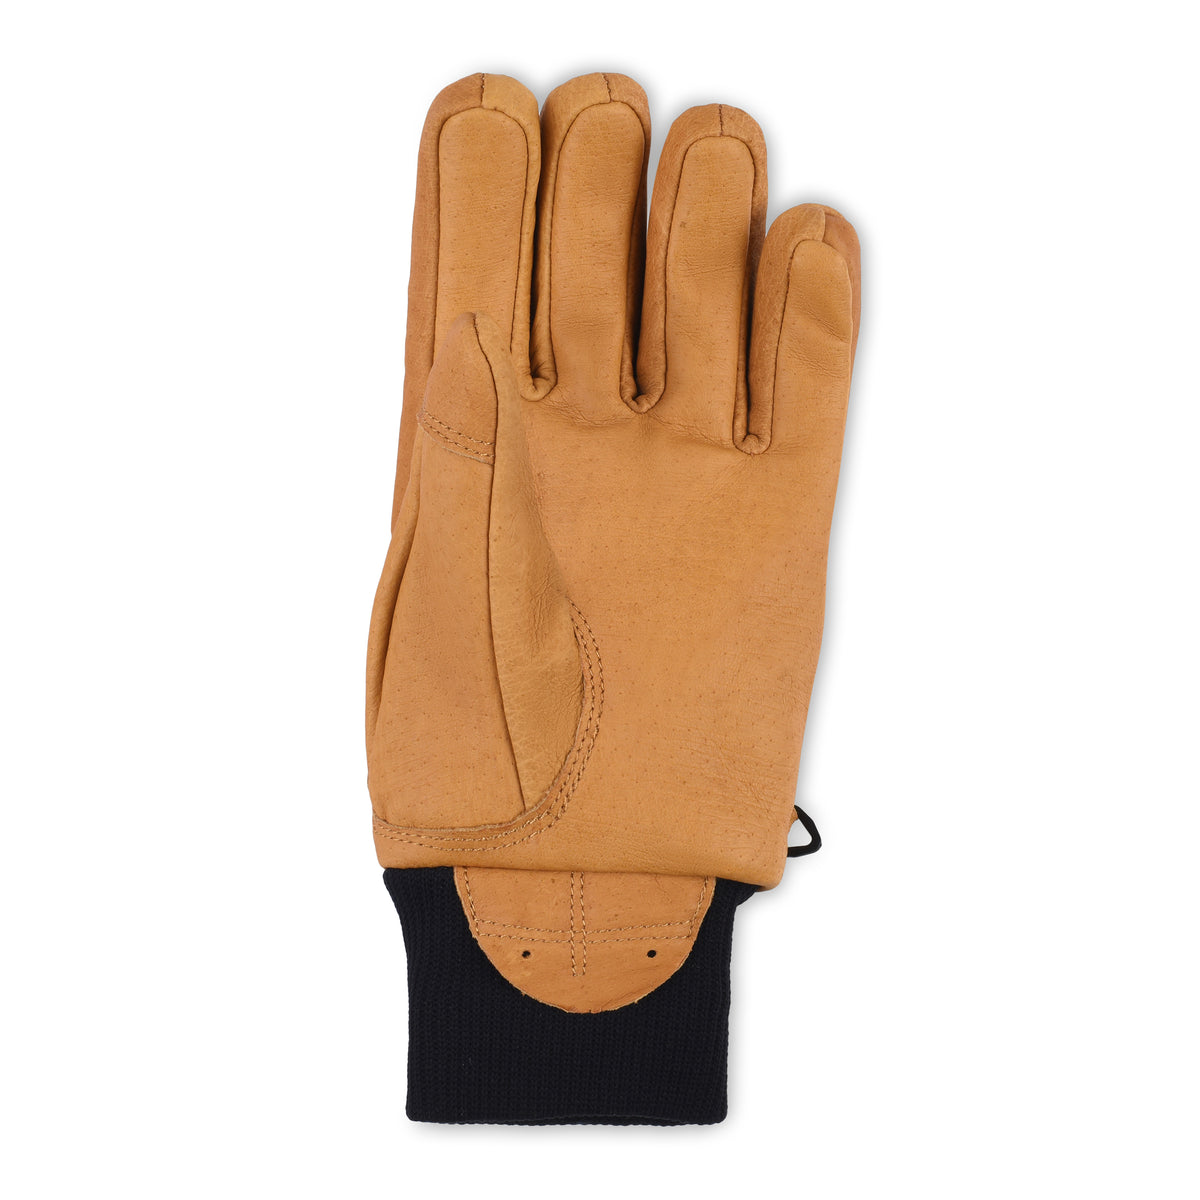 2021 Magarac Glove